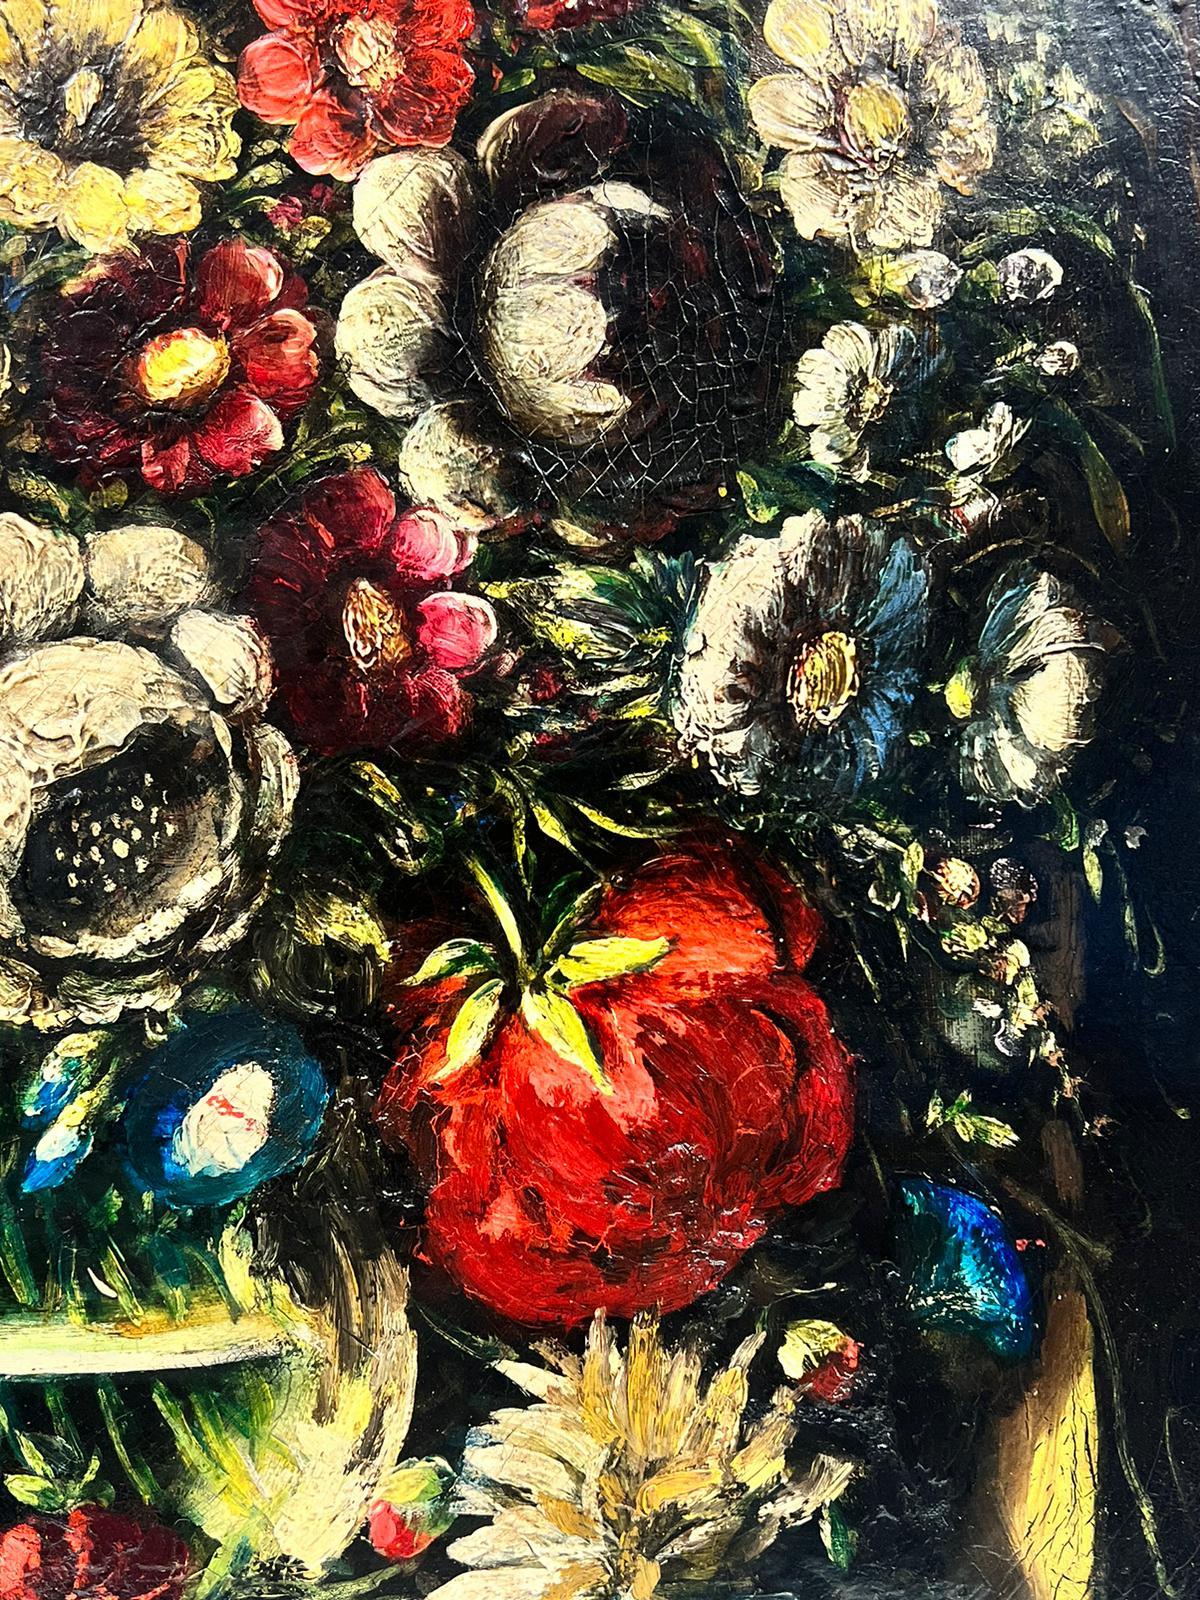 Klassische Stillleben-Blumenschale aus Glas, Öl auf Leinwand, Altmeisterstil (Alte Meister), Painting, von German School